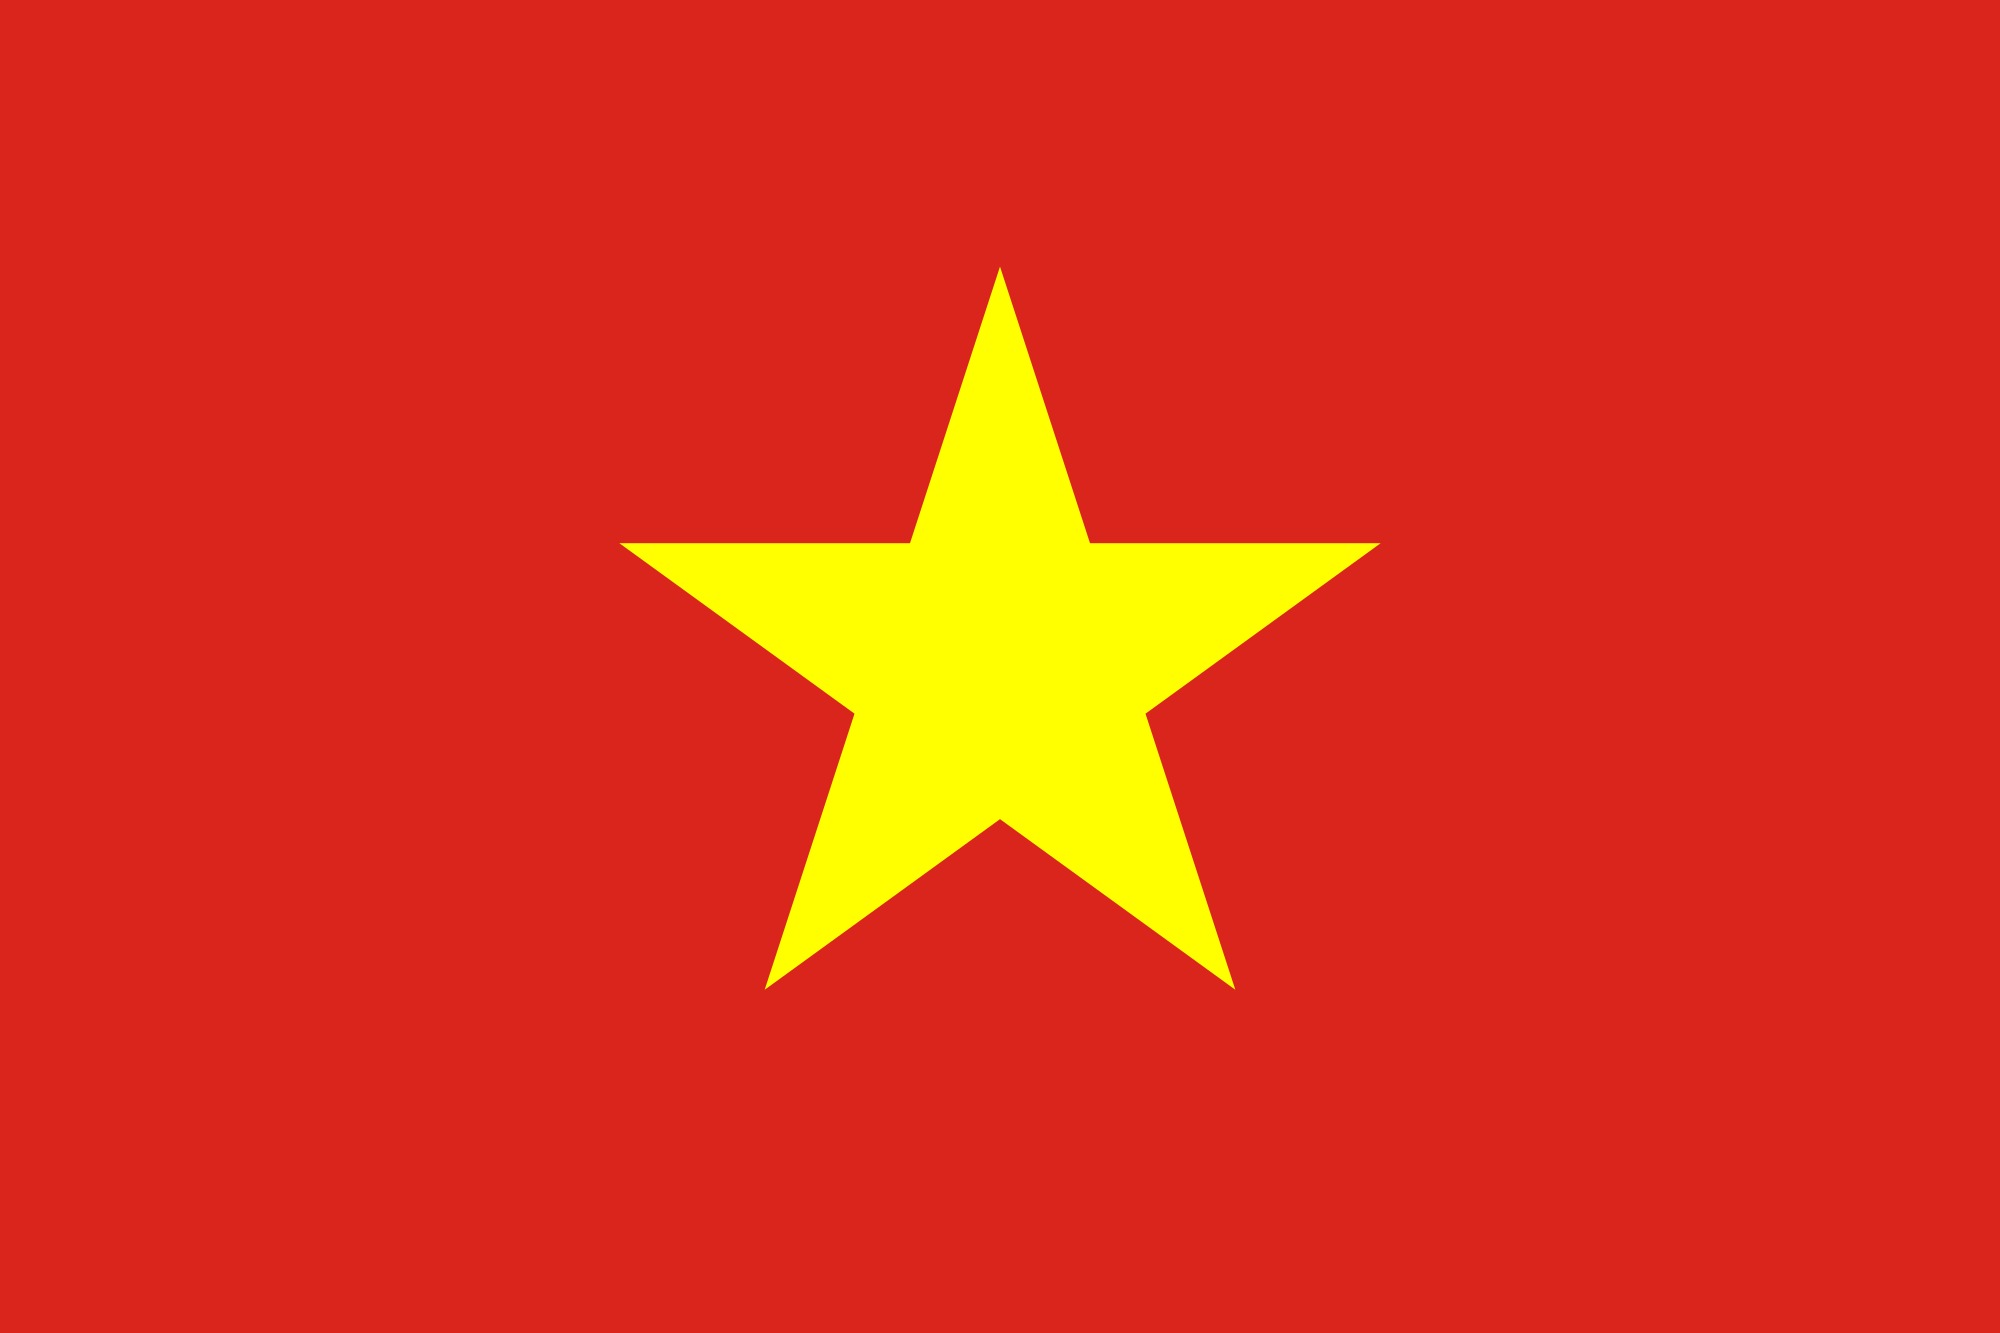 Tượng trưng trên lá quốc kỳ Việt Nam: Trên lá cờ Việt Nam có những hình ảnh tượng trưng khác nhau, mang ý nghĩa riêng. Với sự kết hợp khéo léo giữa màu sắc và hình ảnh, những tượng trưng này đã trở thành những biểu tượng bất hủ của dân tộc Việt Nam. Hãy cùng ngắm lại hình ảnh lá cờ Việt Nam, tìm hiểu và đồng cảm với những giá trị đẹp của tình yêu quê hương.